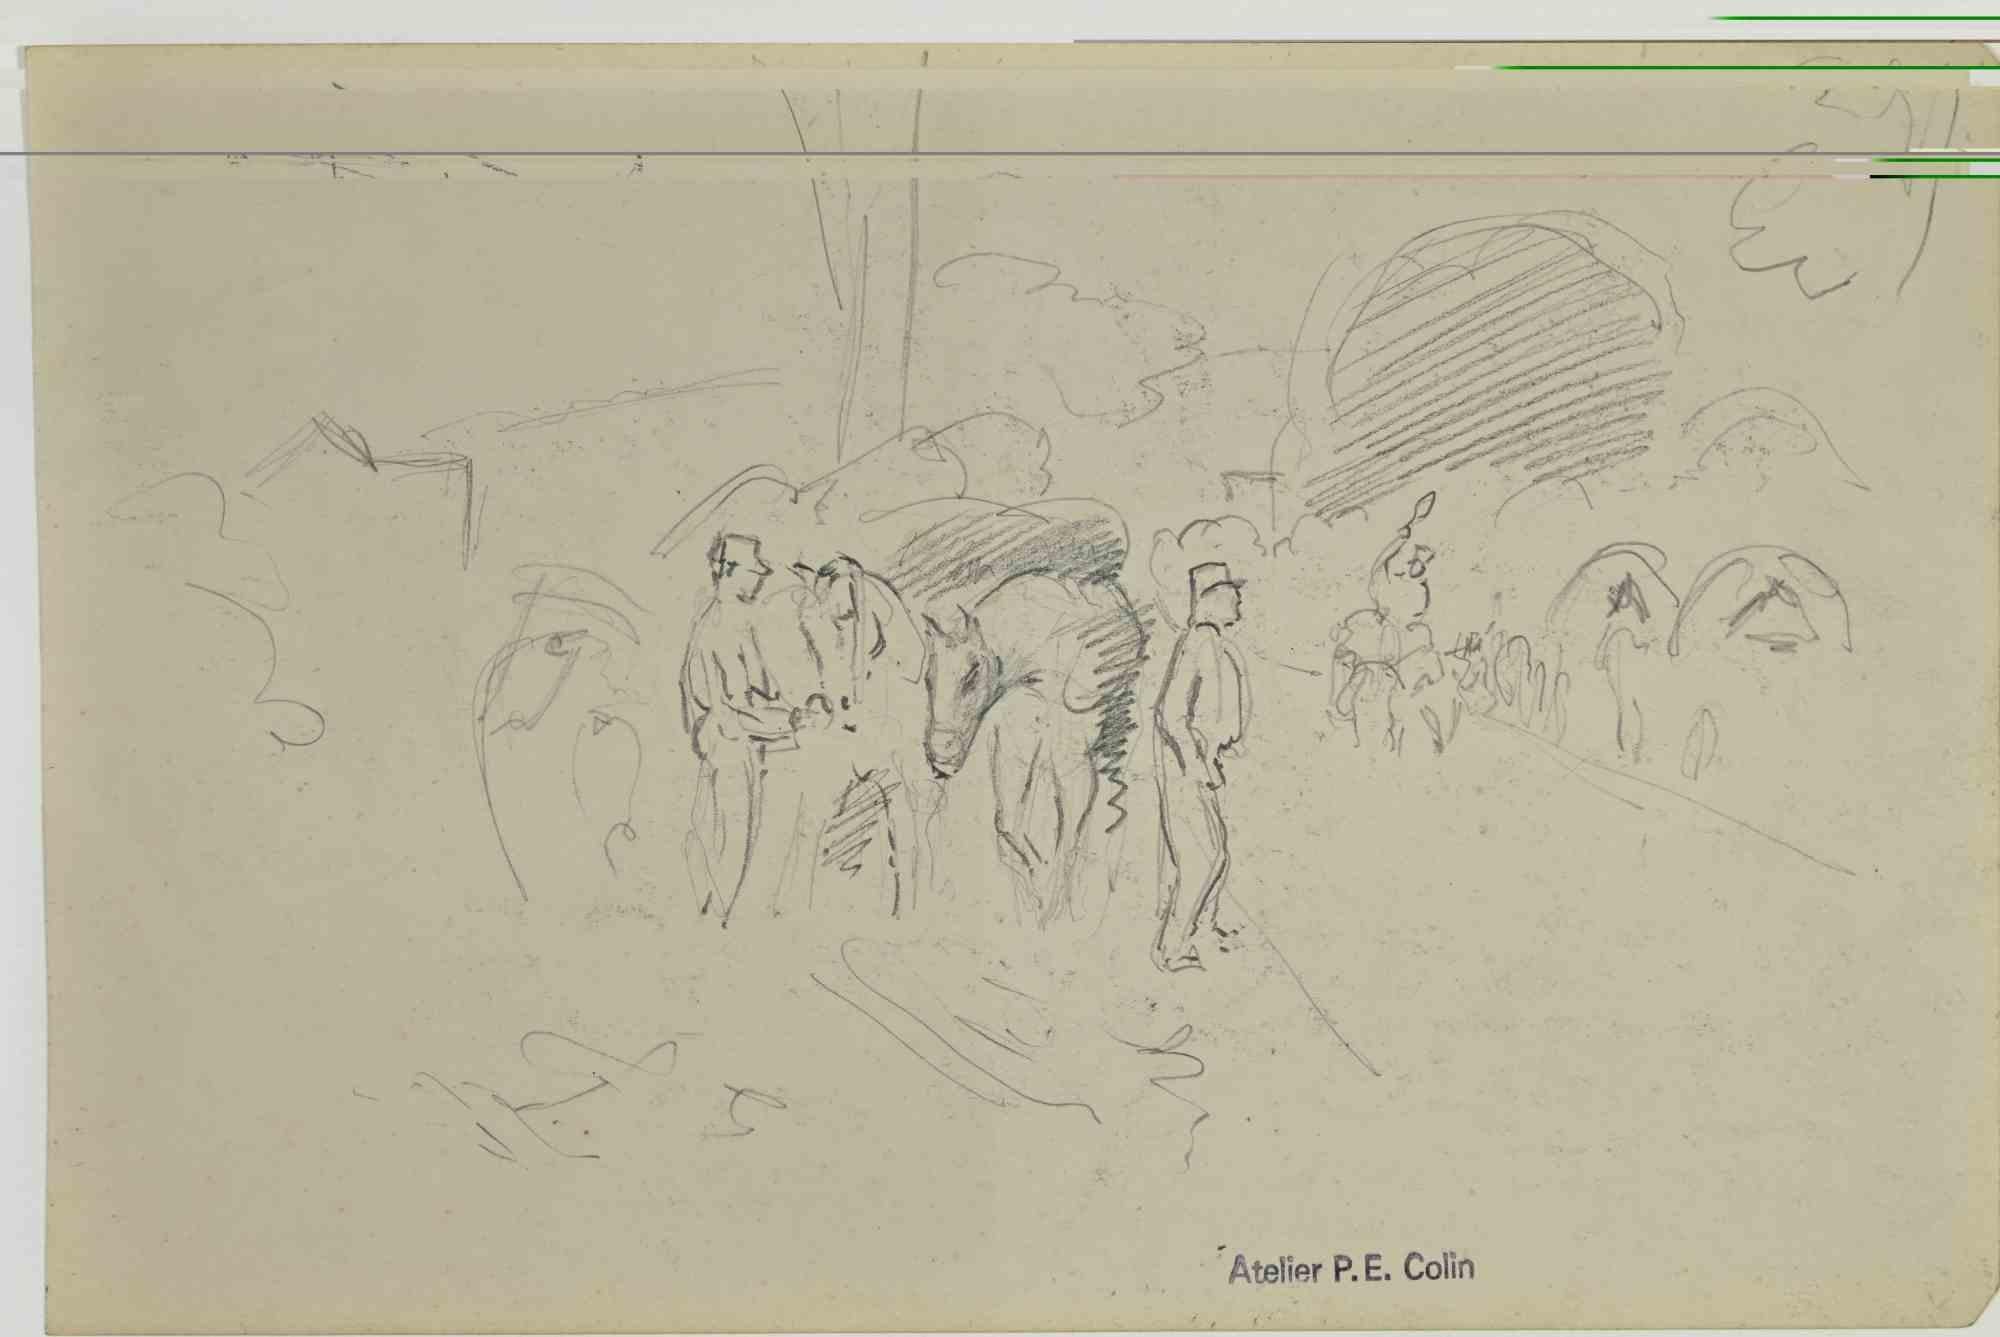 Soldats au camp est un dessin réalisé par Paul Emile Colin au début du 20ème siècle.

Crayon de carbone sur papier ivoire

Estampillé sur la partie inférieure.

Bon état avec de légères rousseurs.

L'œuvre d'art est réalisée à l'aide de traits